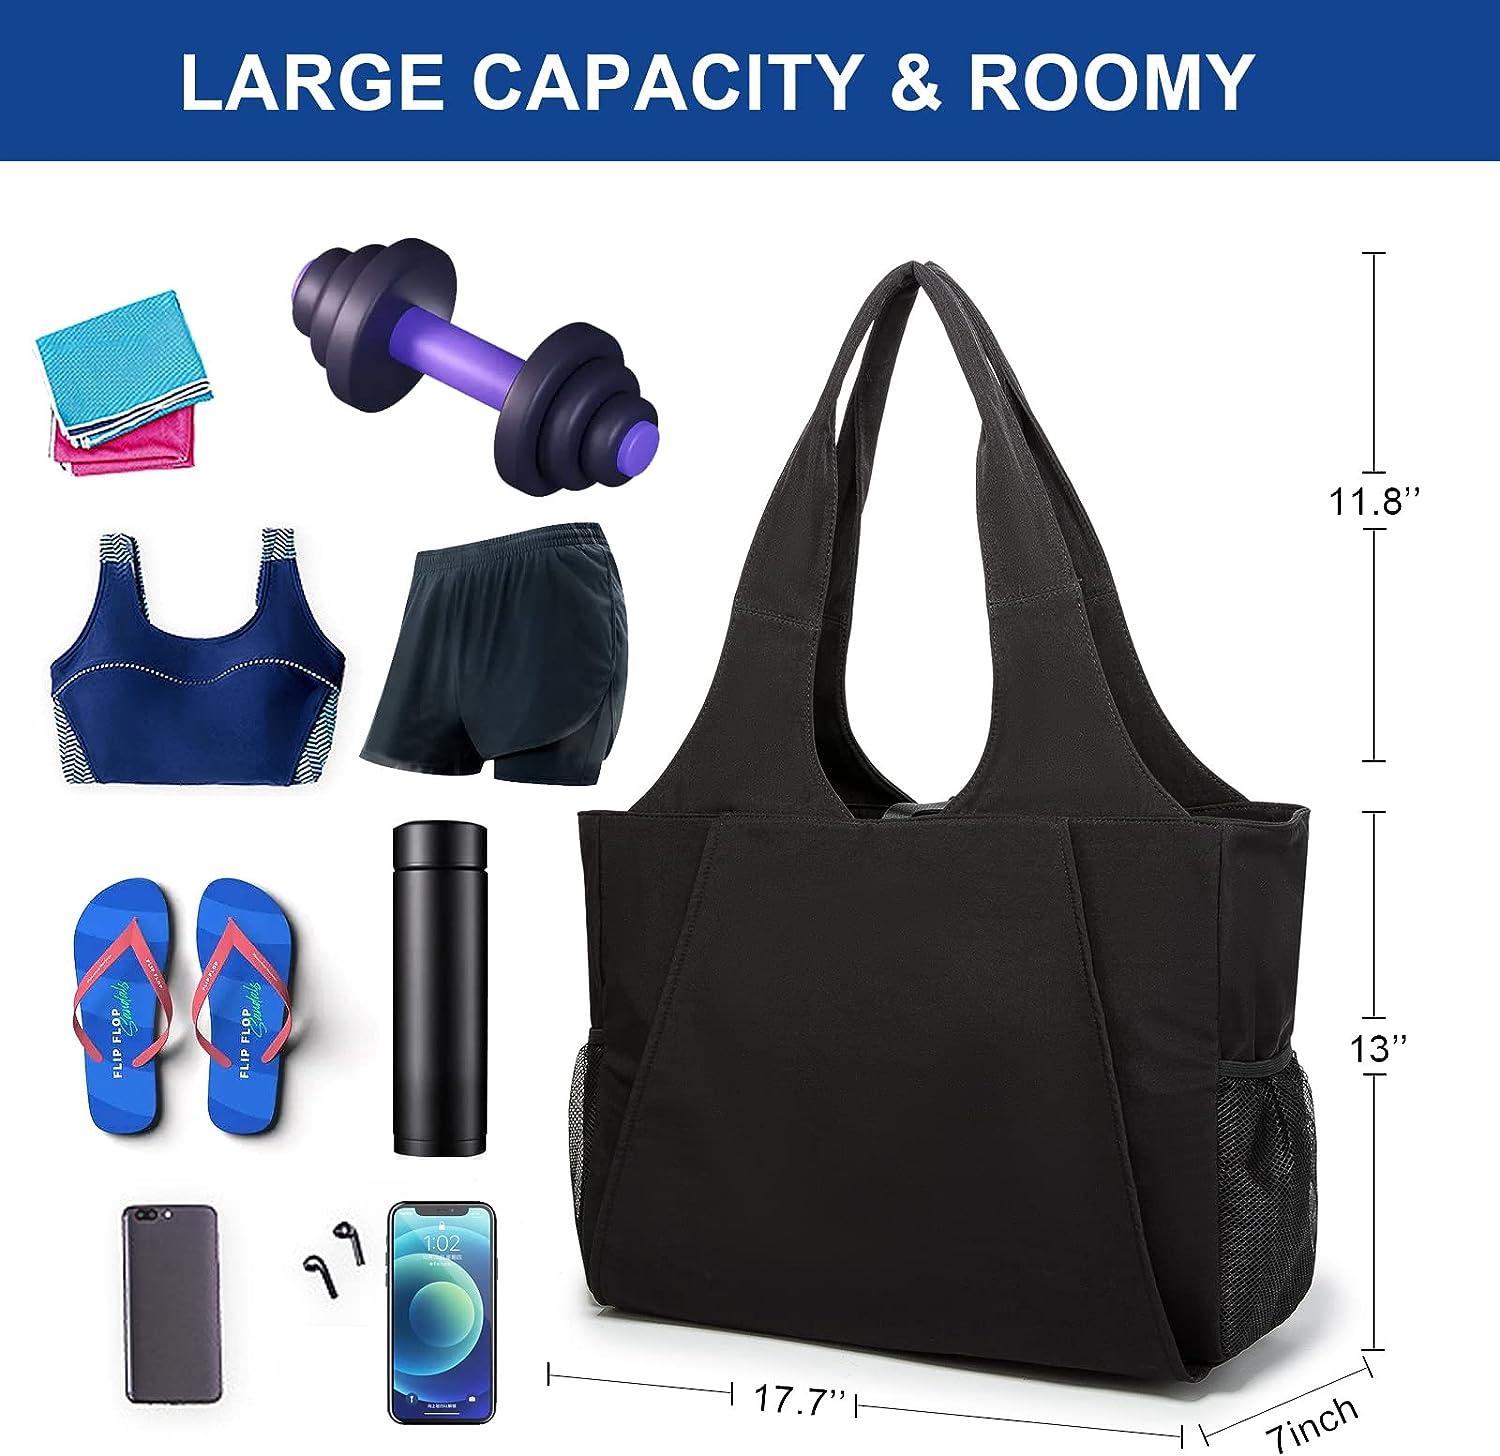 KUAK Yoga Mat Bag for Women, Large Waterproof Yoga Bags and